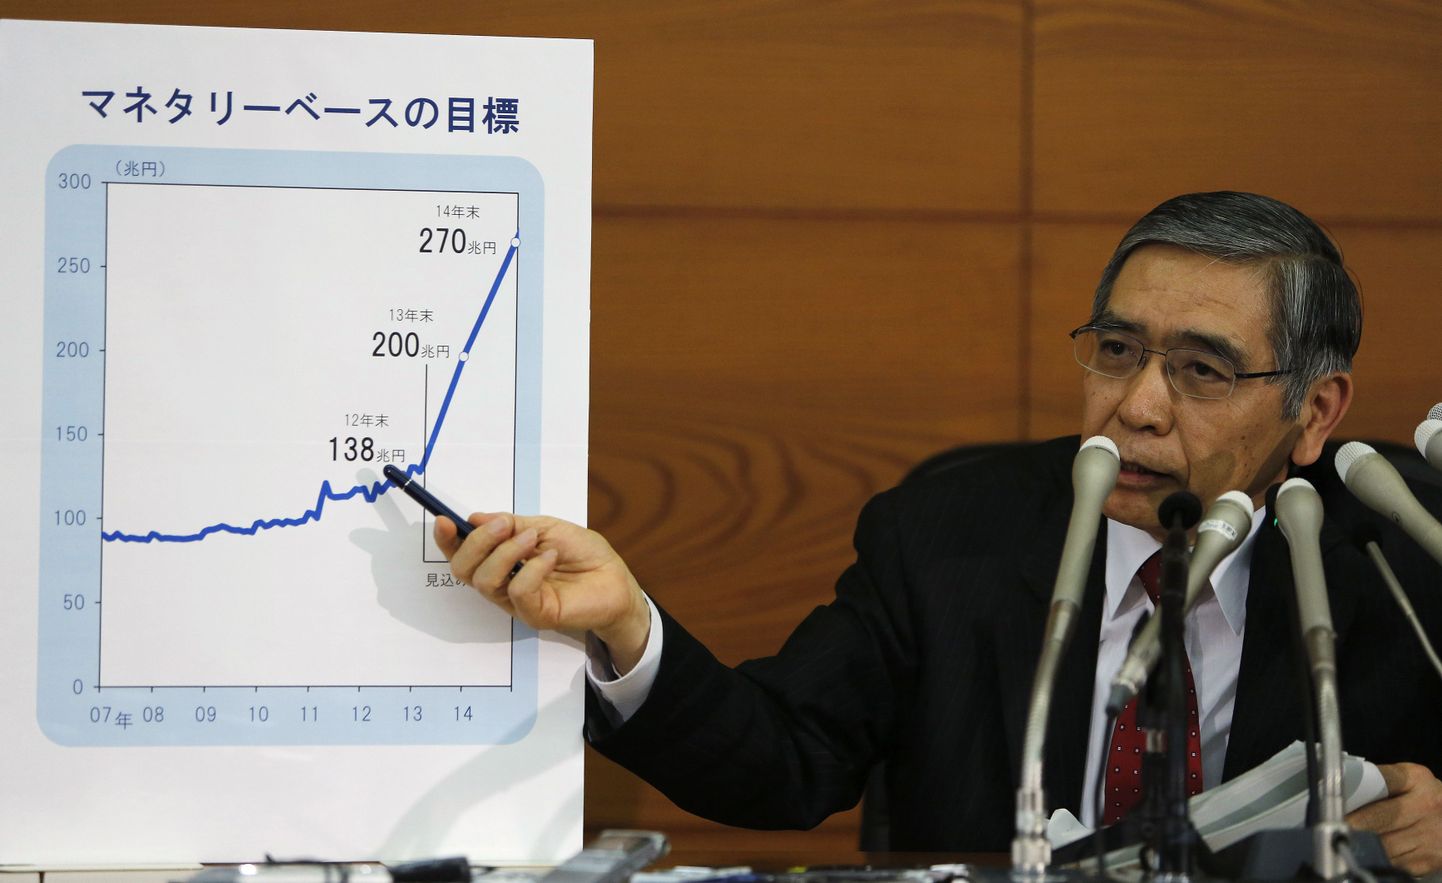 Jaapani panga president Haruhiko Kuroda tutvustas täna oma plaani Jaapani majanduse elavdamiseks.